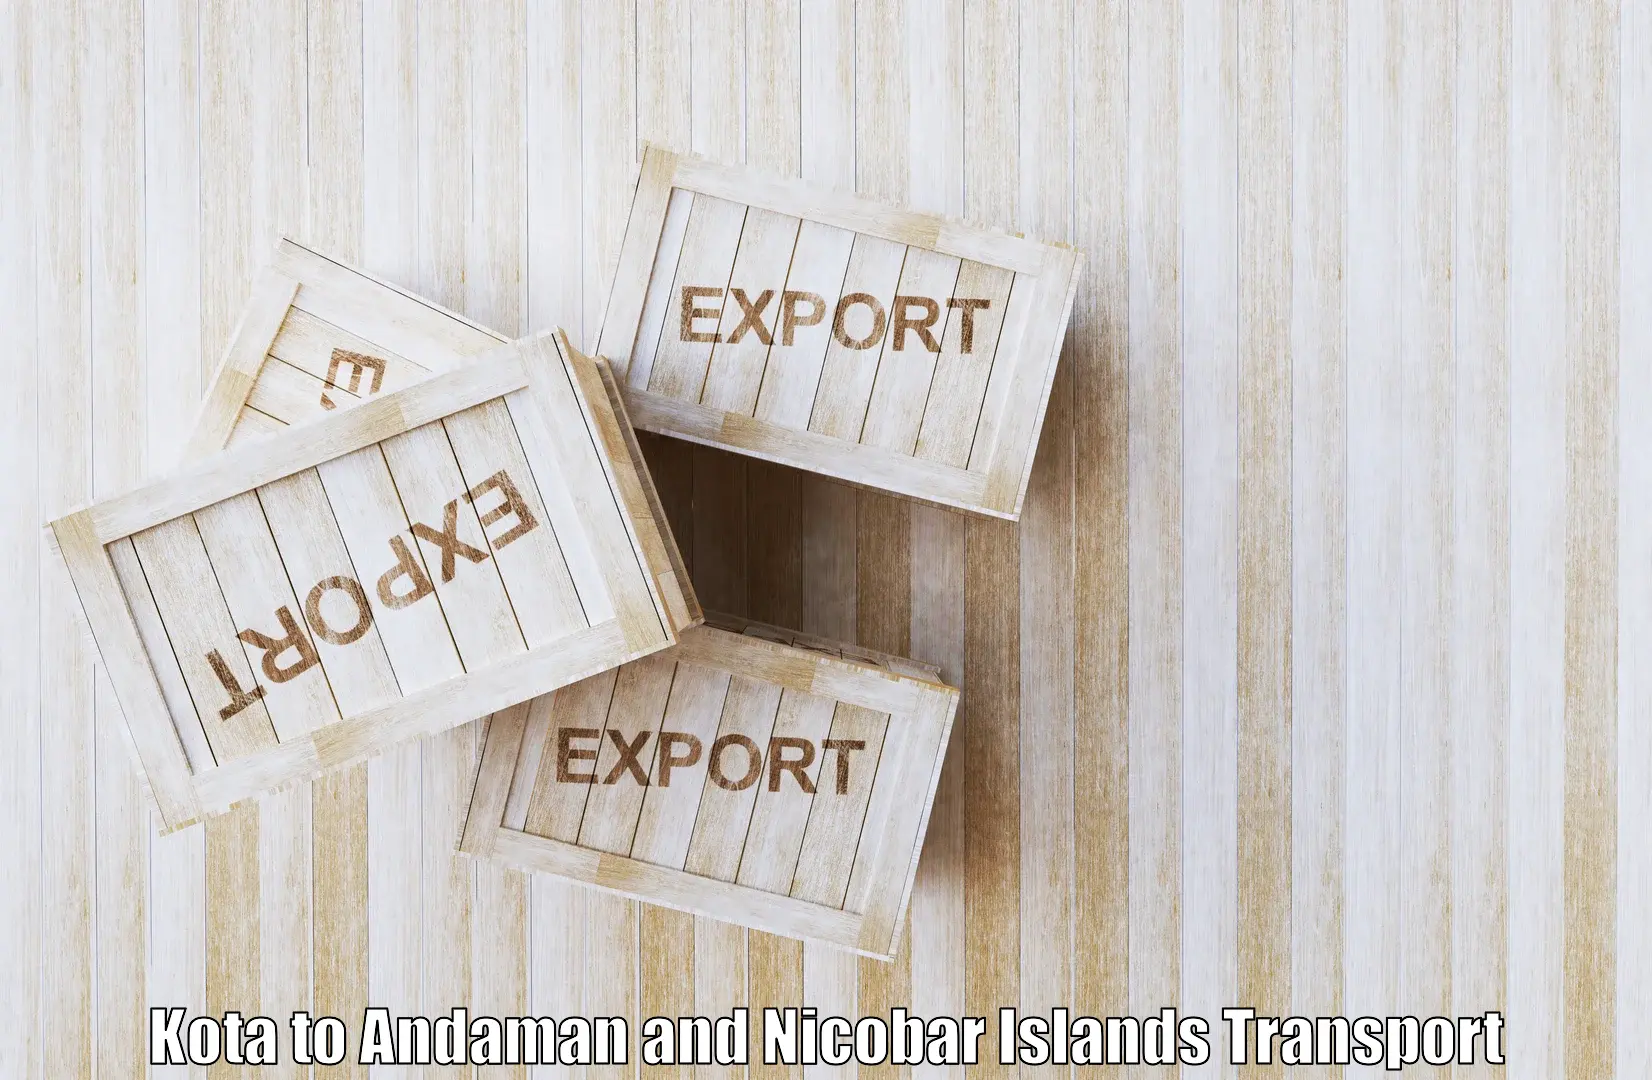 Cargo transport services Kota to Andaman and Nicobar Islands